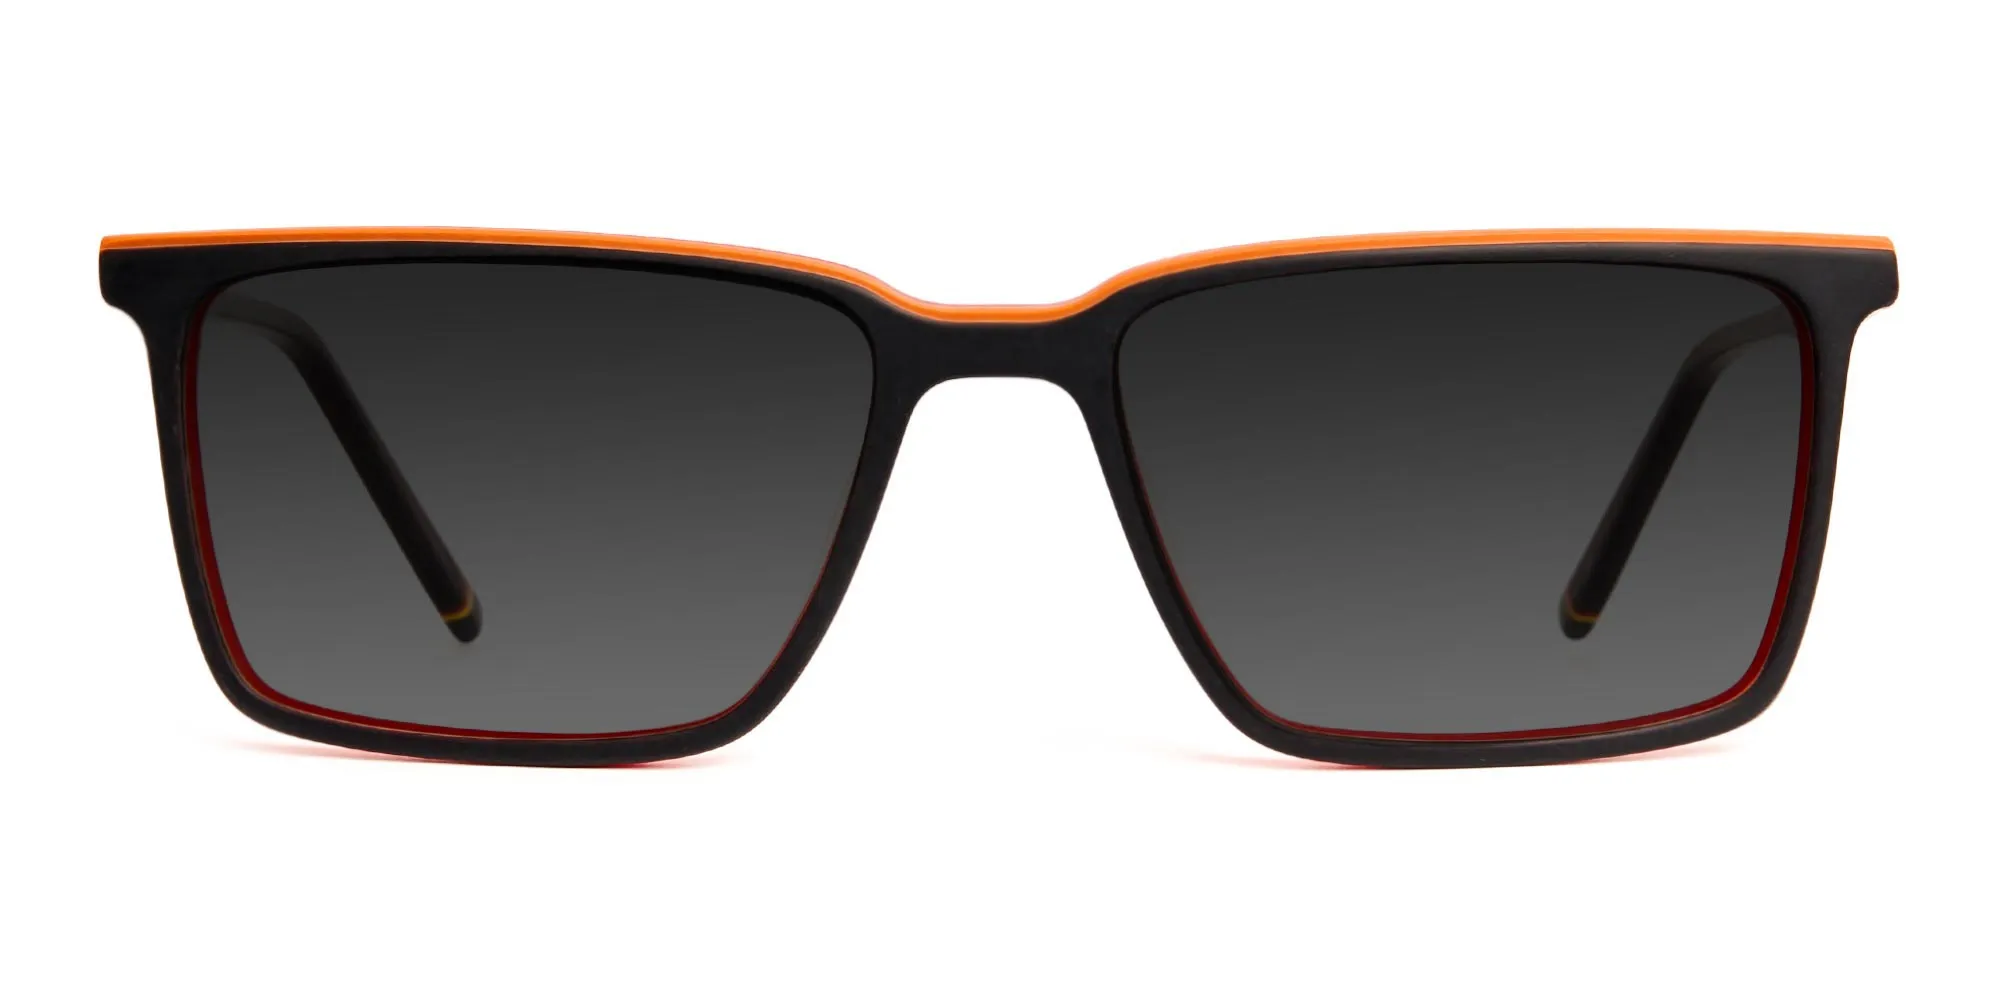 Buy Styloze Rectangular Sunglasses Black For Boys & Girls Online